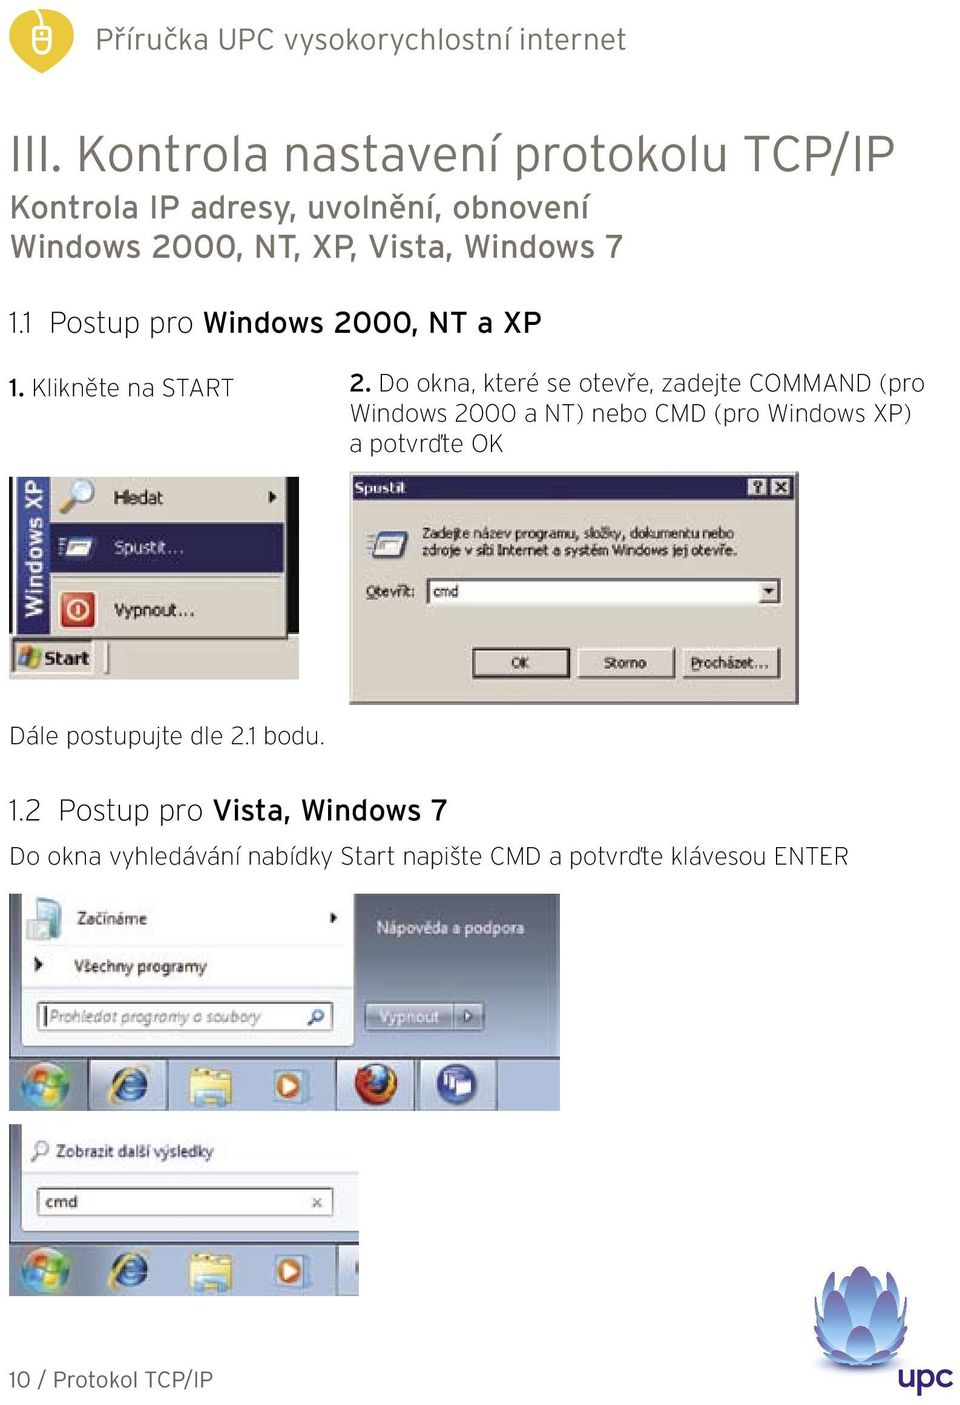 Do okna, které se otevře, zadejte COMMAND (pro Windows 2000 a NT) nebo CMD (pro Windows XP) a potvrďte OK